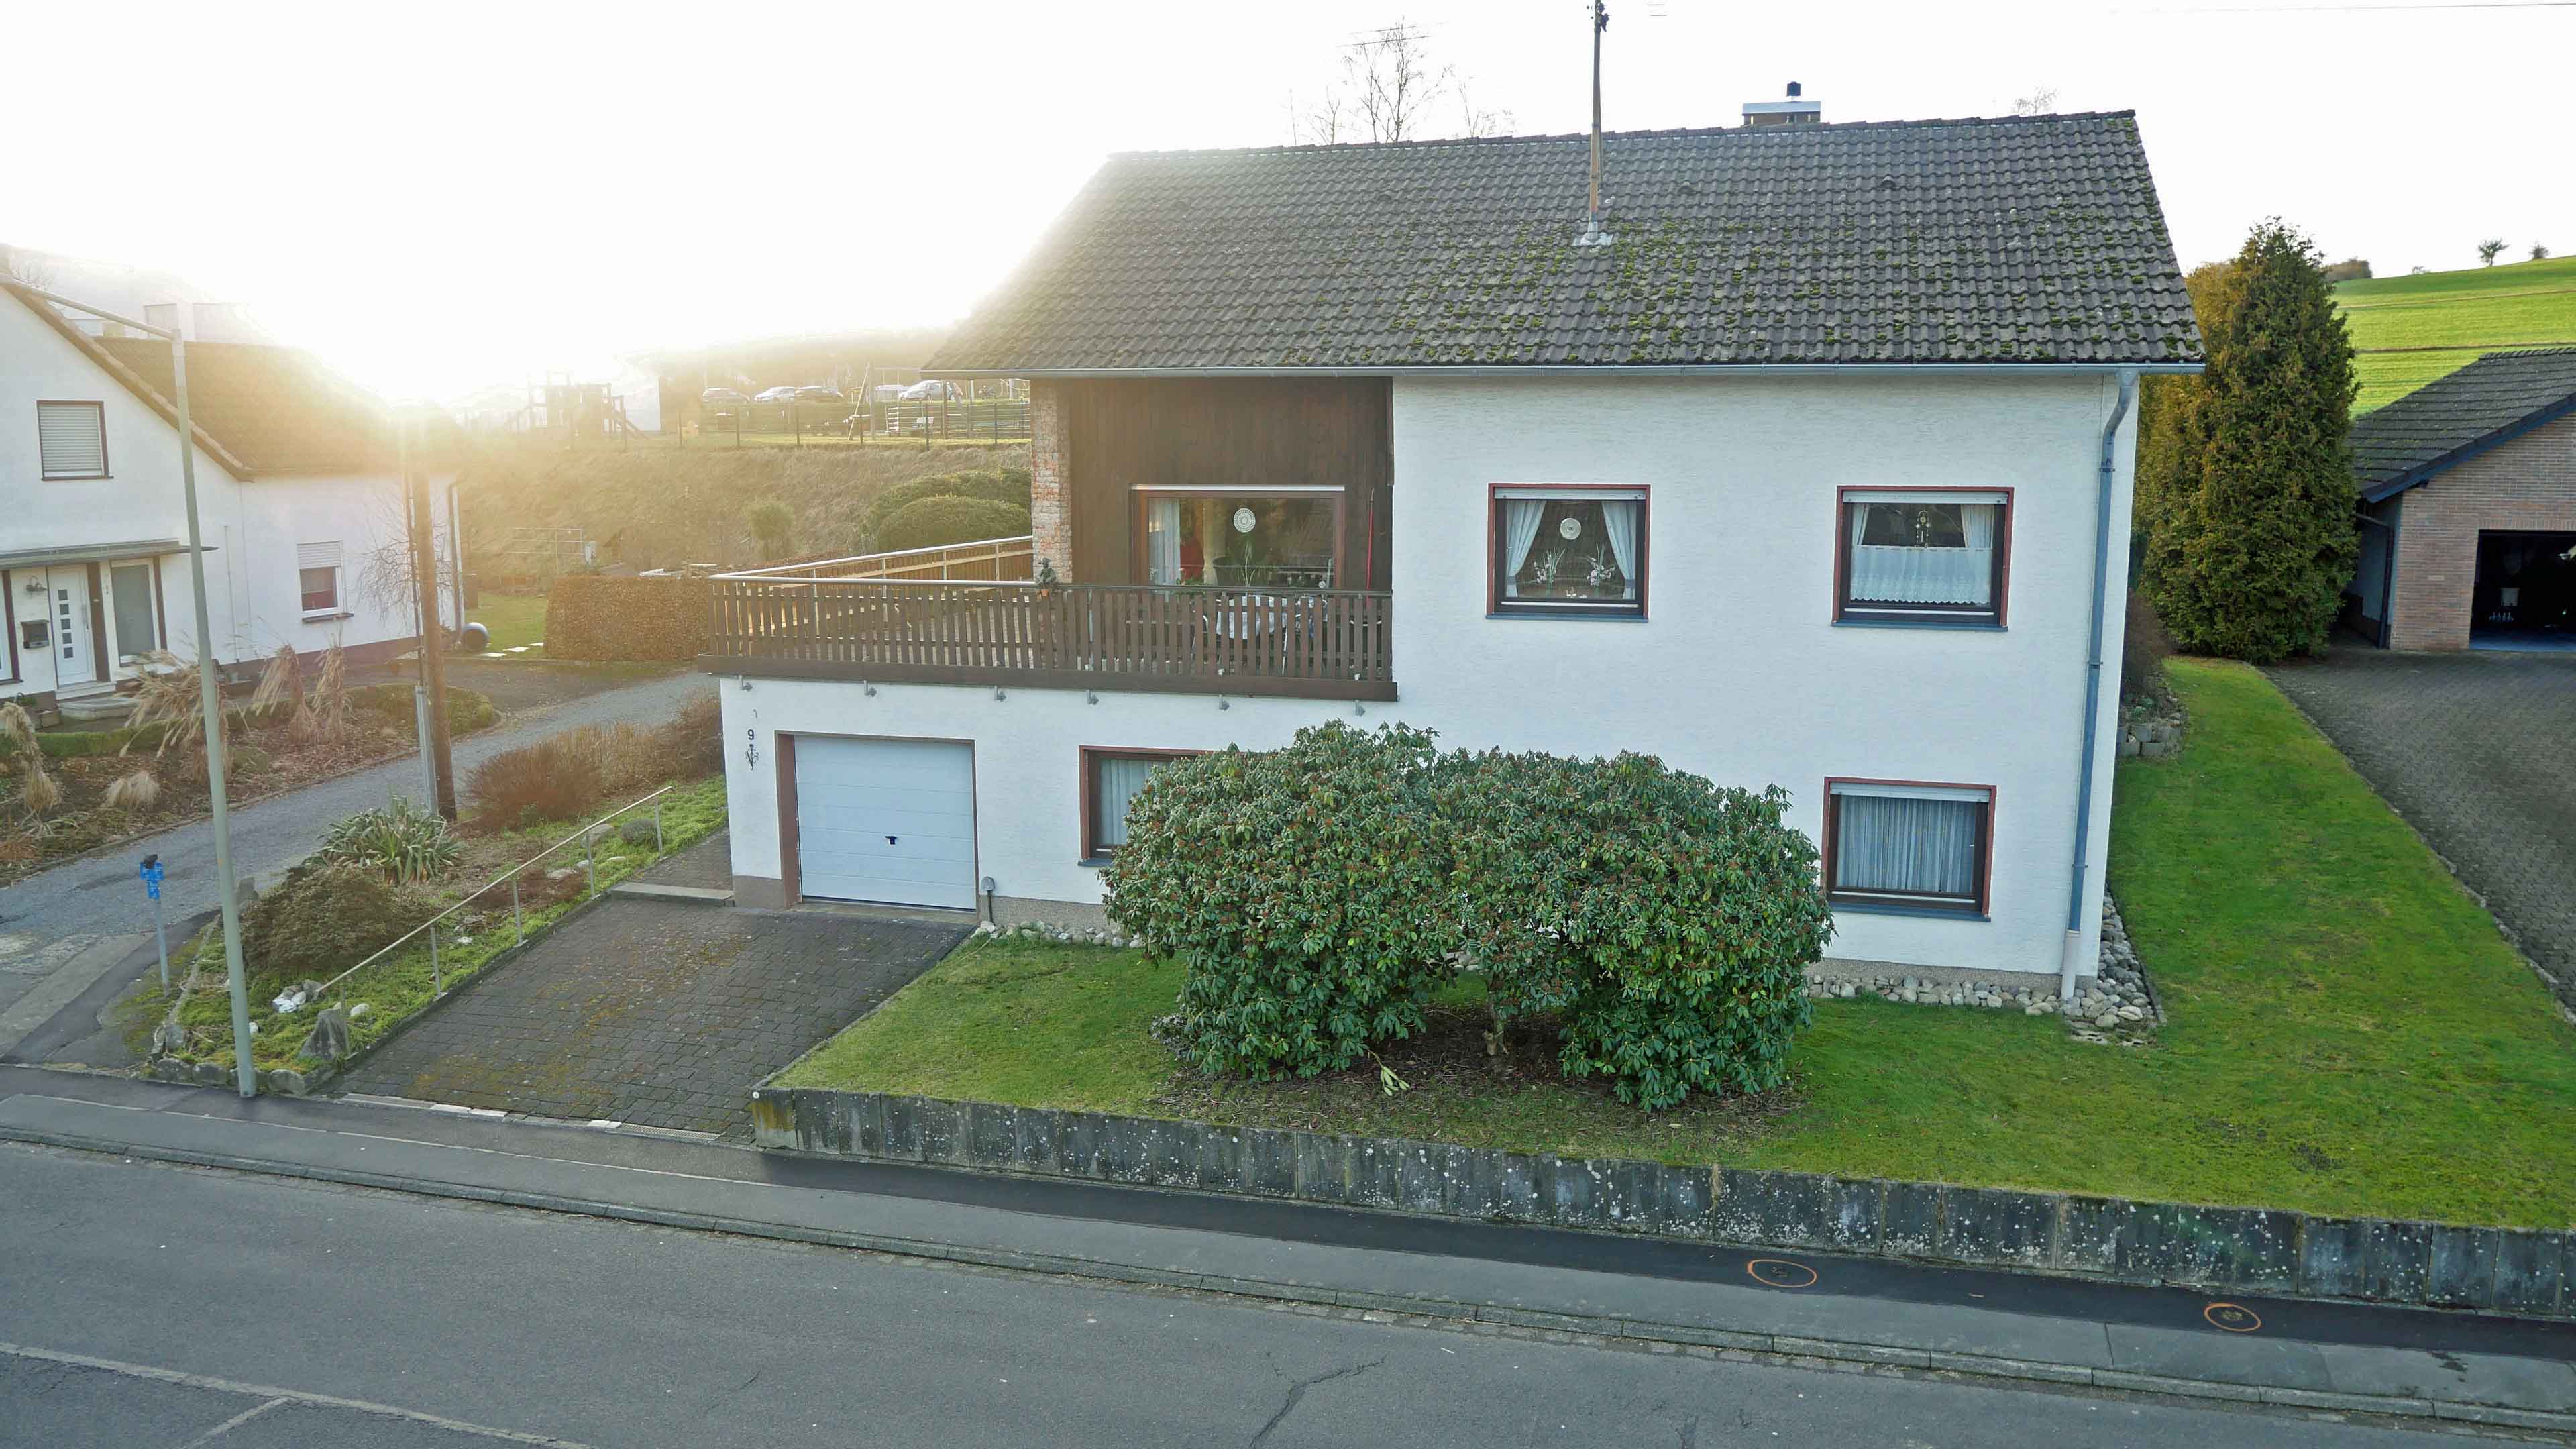 Freudenberg-Büschergrund: EFH mit Terrasse, Garten und Garage, 655 m² Grundstück. Frontseite mit Garagenzufahrt